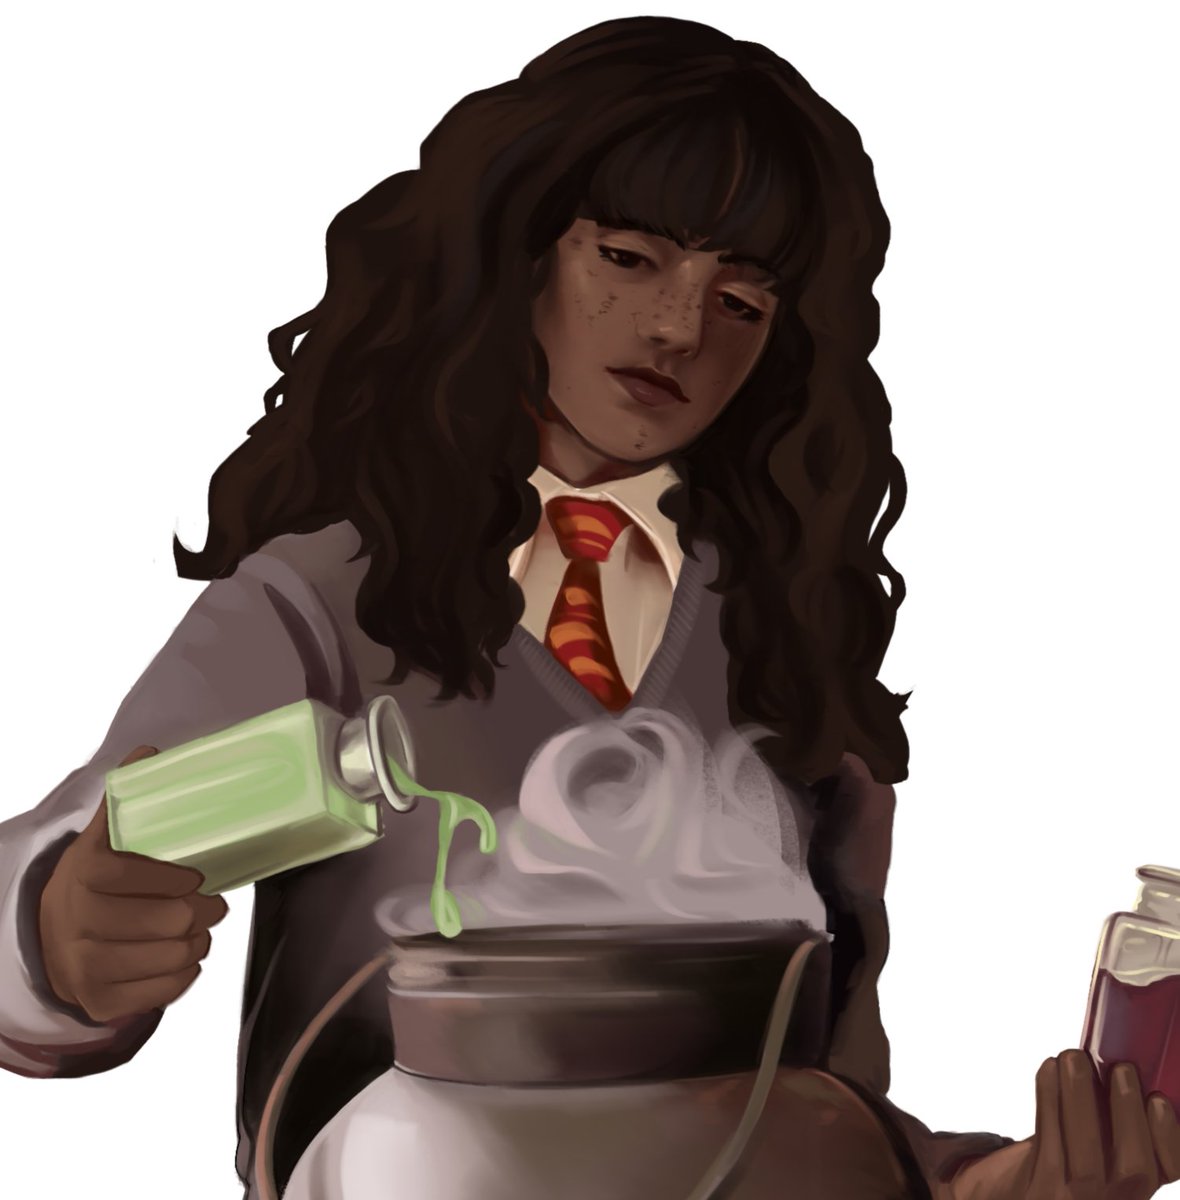 potion master :-)

#hermionegranger #hermione #hpfanart